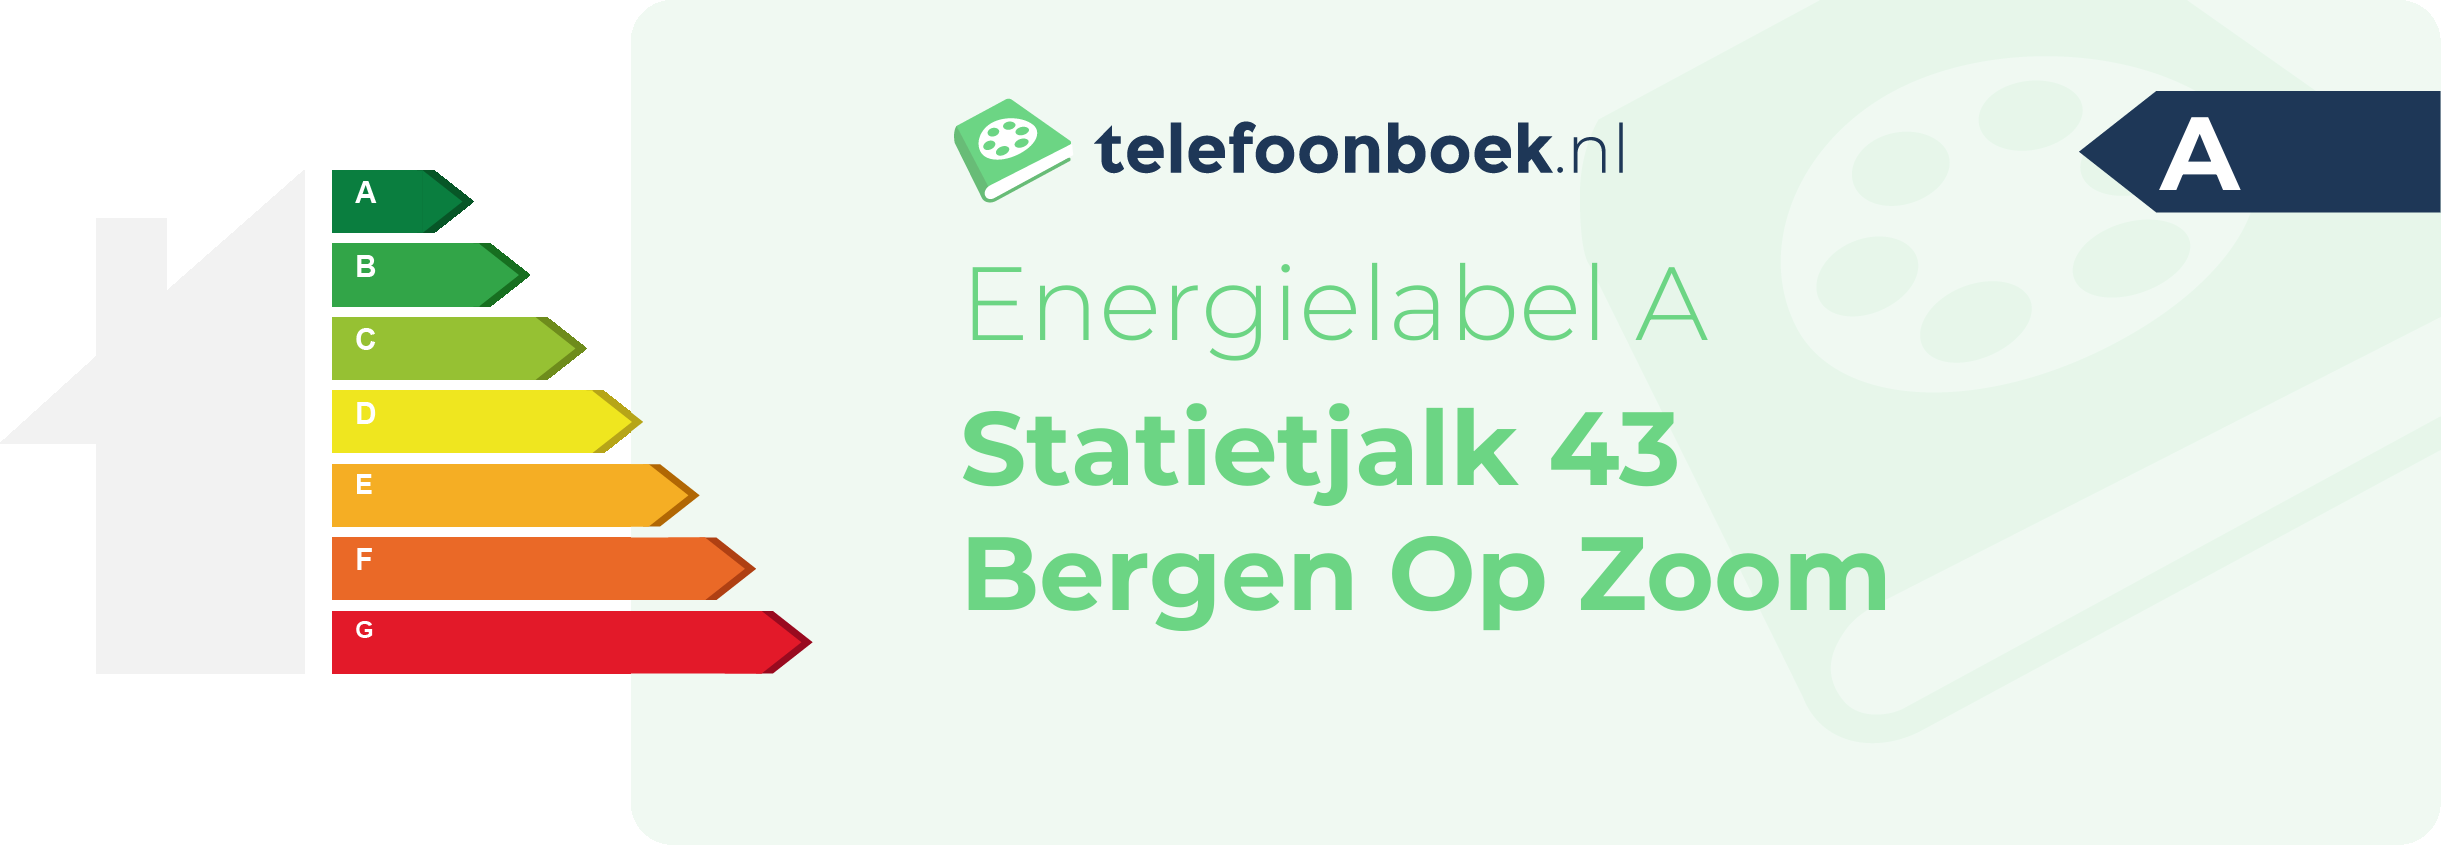 Energielabel Statietjalk 43 Bergen Op Zoom